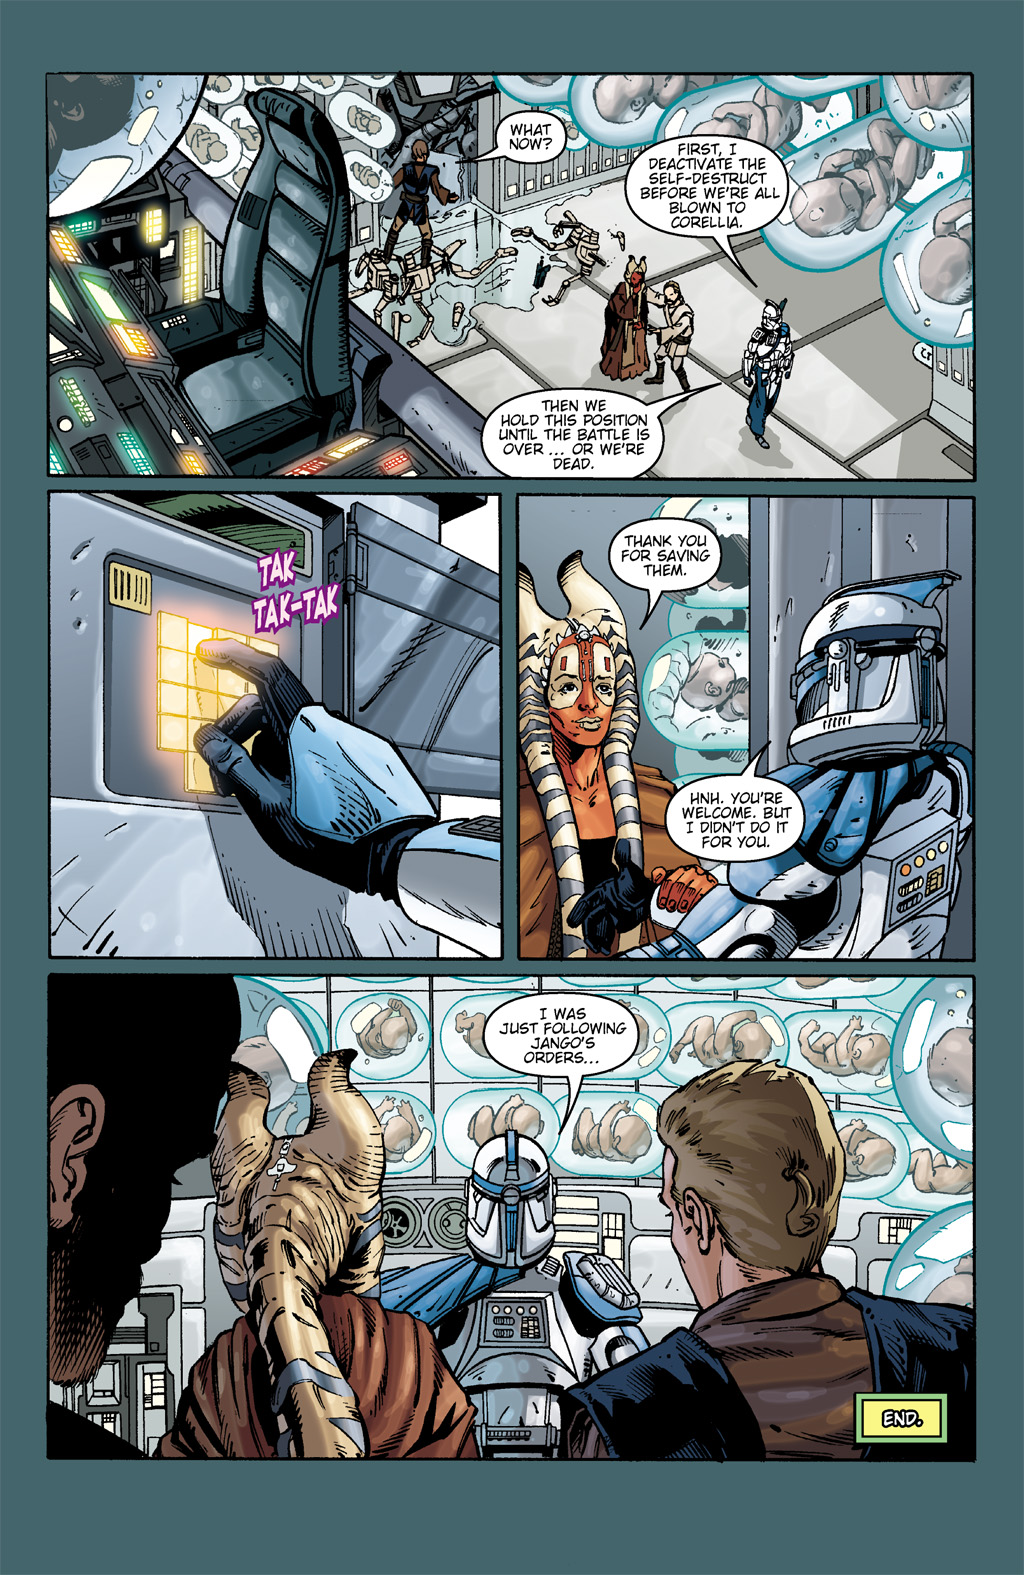 Read online Star Wars: Clone Wars comic -  Issue # TPB 1 - 66